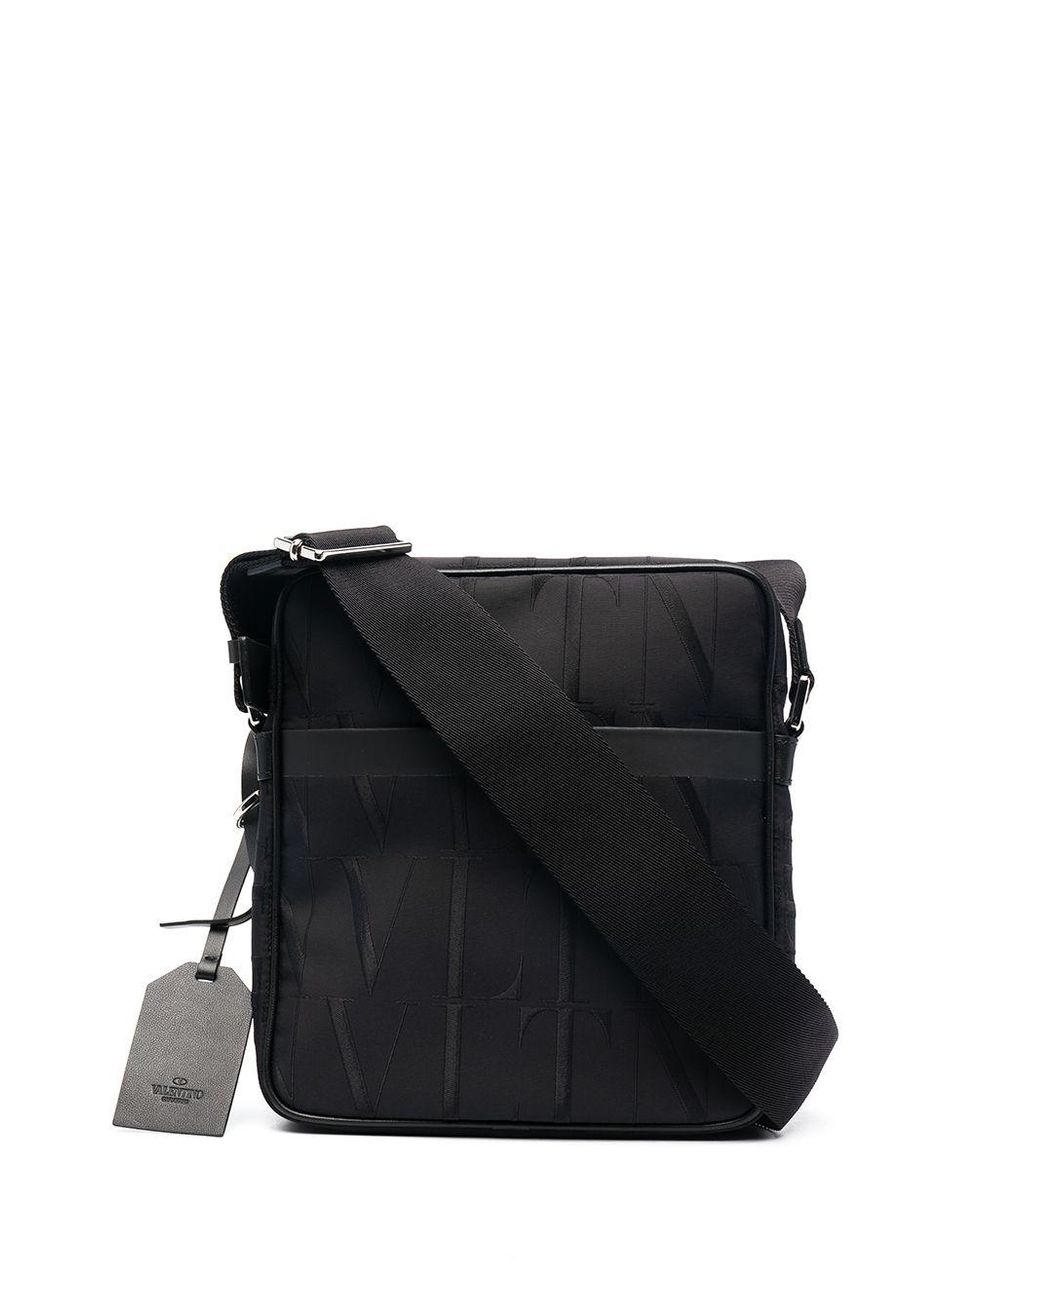 Valentino Garavani Cotton Vltn Messenger Bag in Black for Men - Lyst